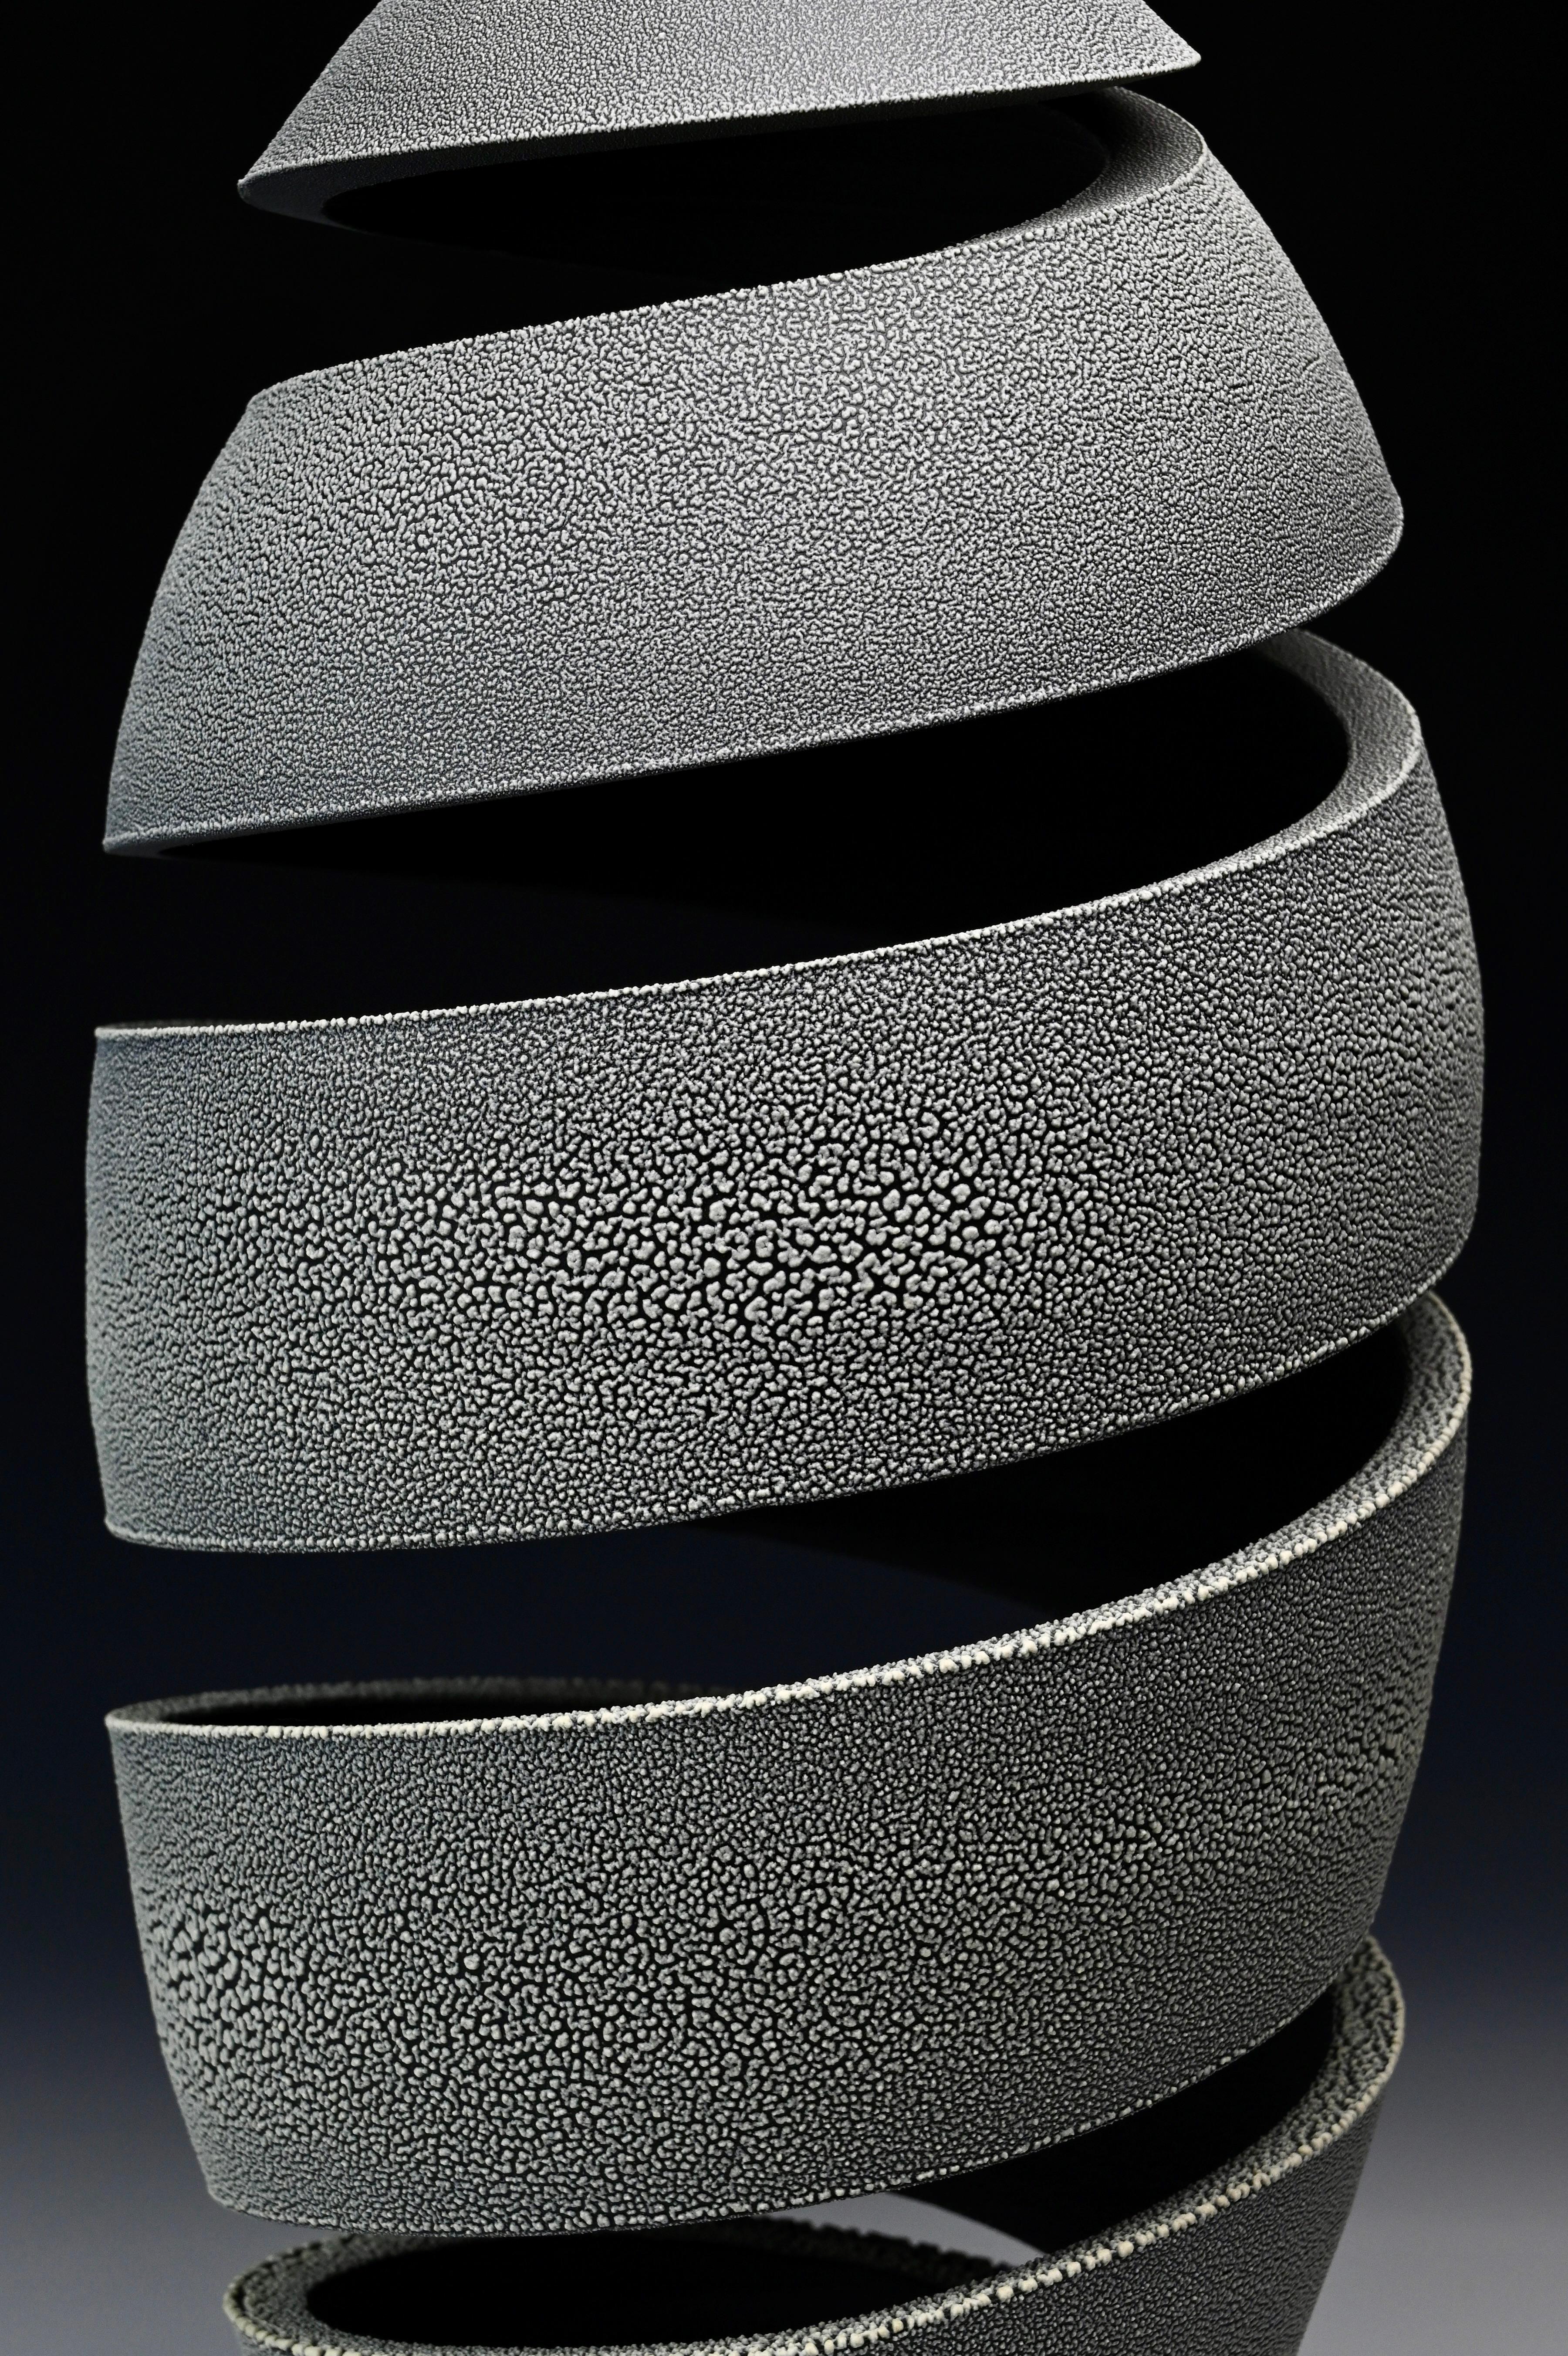 Spatial Spiral: Schnecke – Abstrakte spiralförmige Keramikskulptur – Sculpture von Michael Boroniec